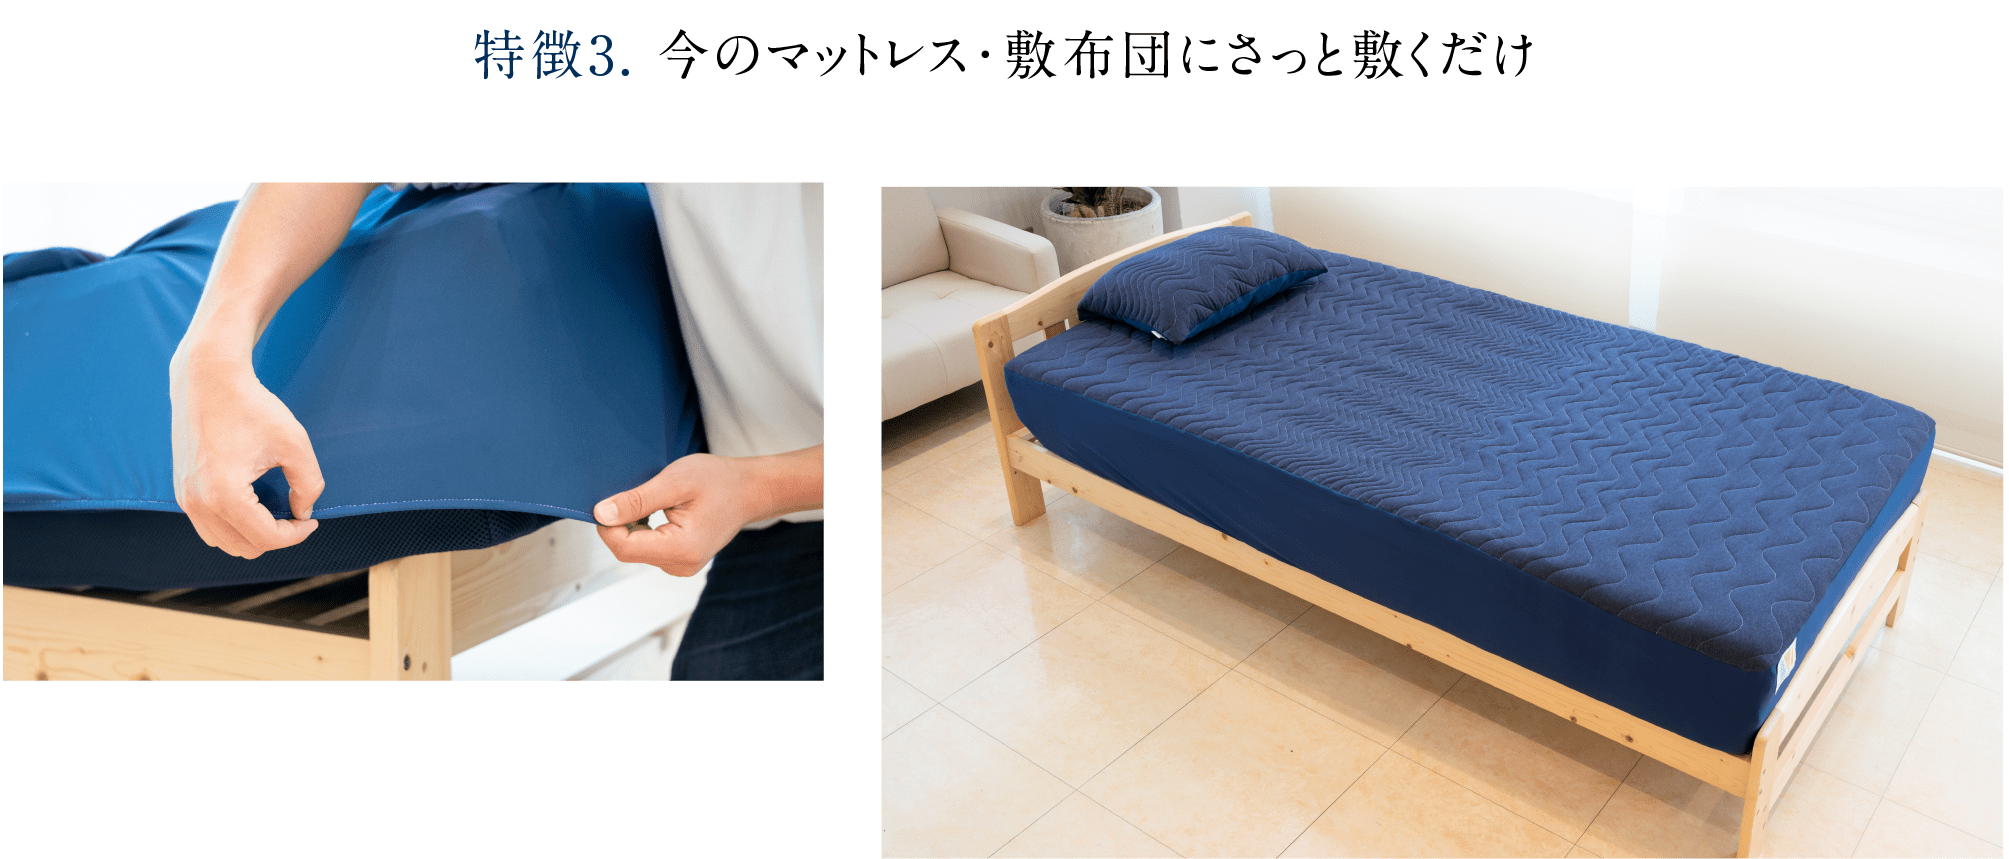 特徴3. 今のマットレス・敷布団にさっと敷くだけ 「Recovery Sleep敷きパッド」はマチ部分をストレッチ素材にすることで簡単に取り付けられ手間がかかりません。